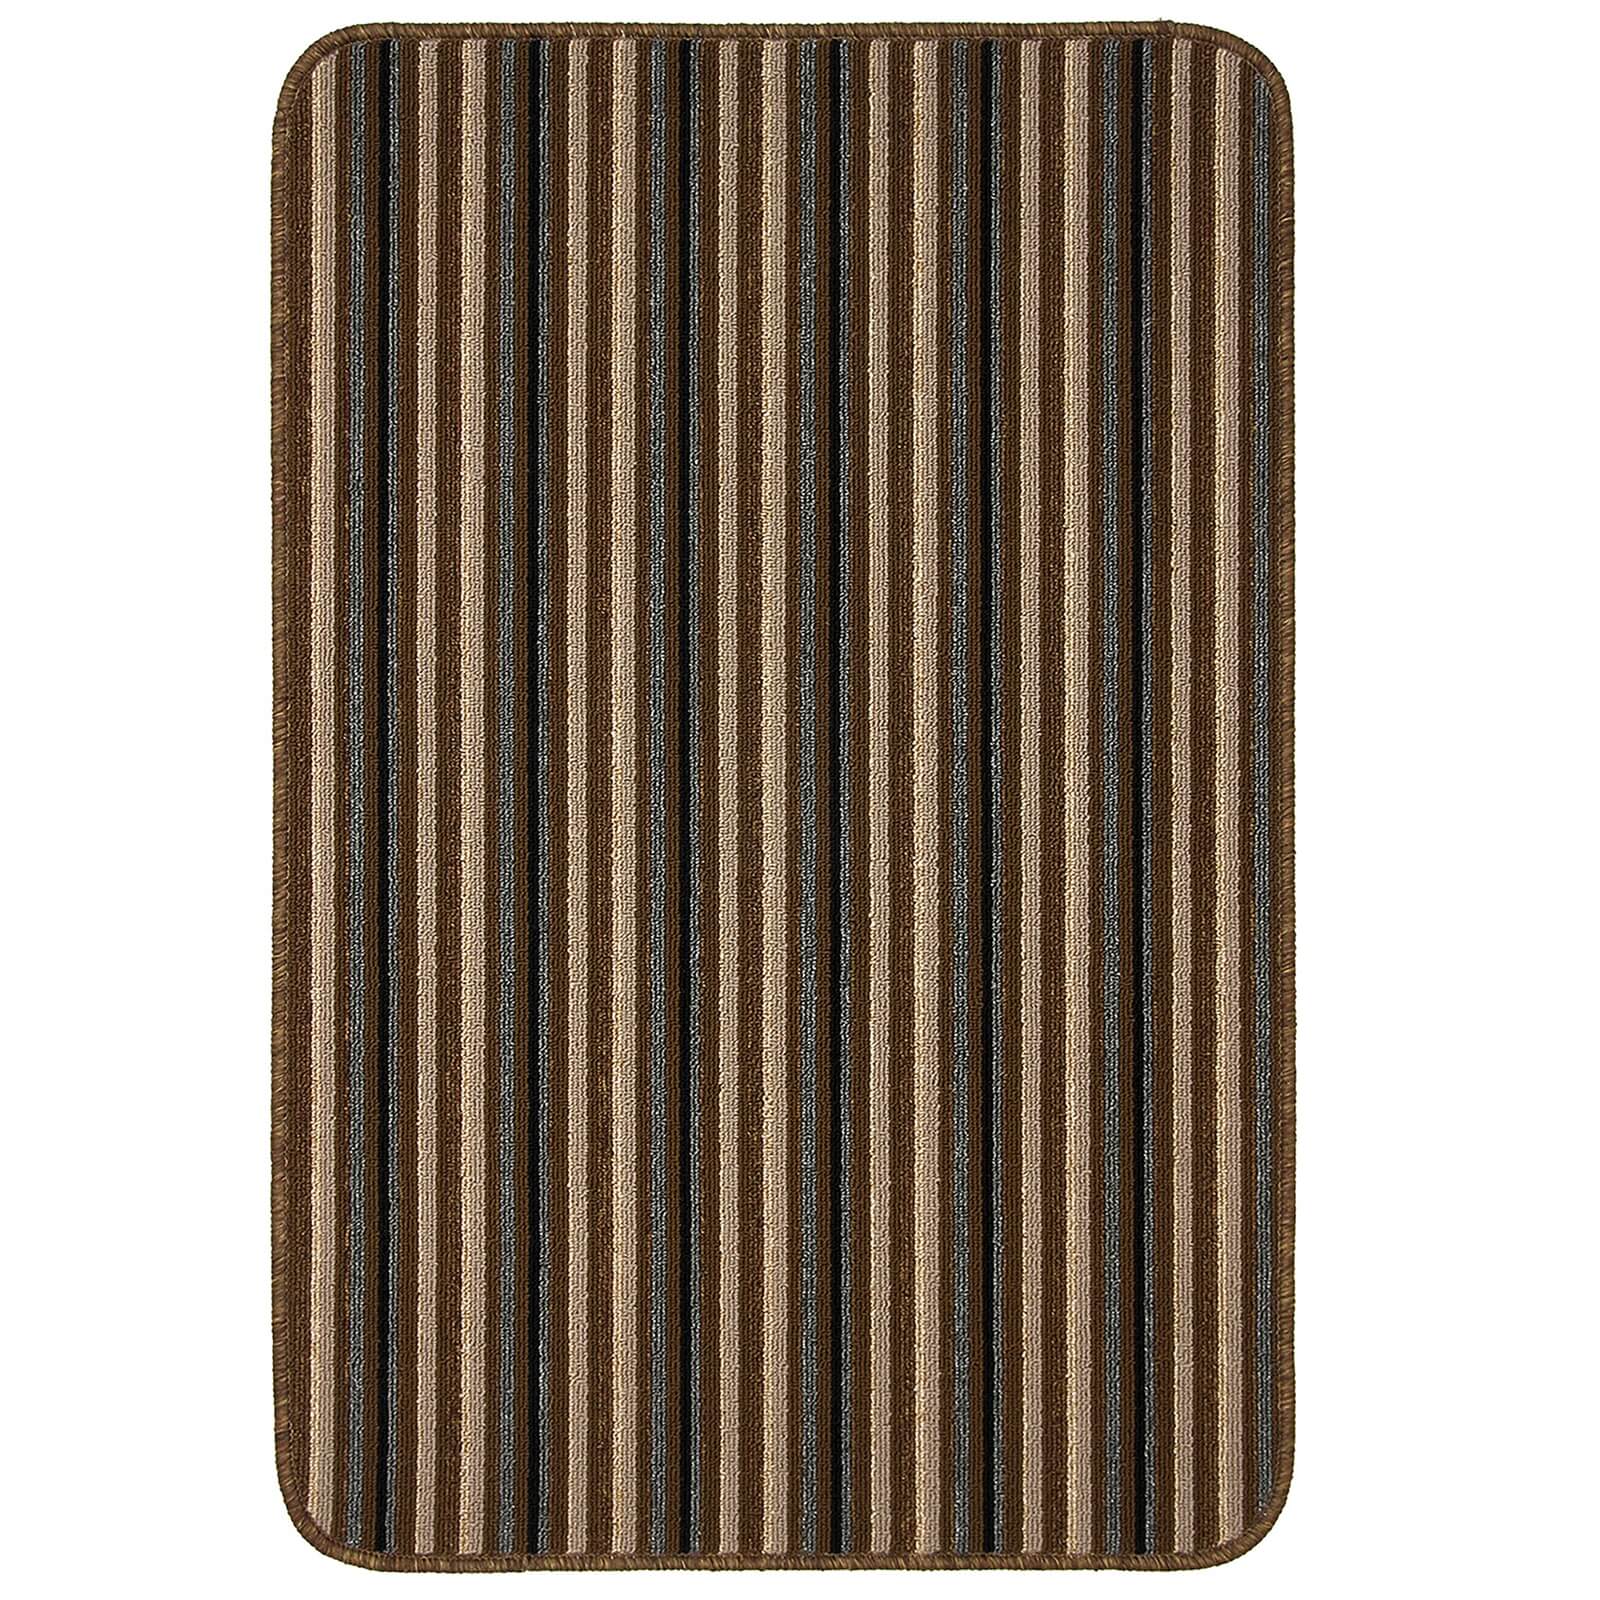 Java washable stripe mat -Chocolate